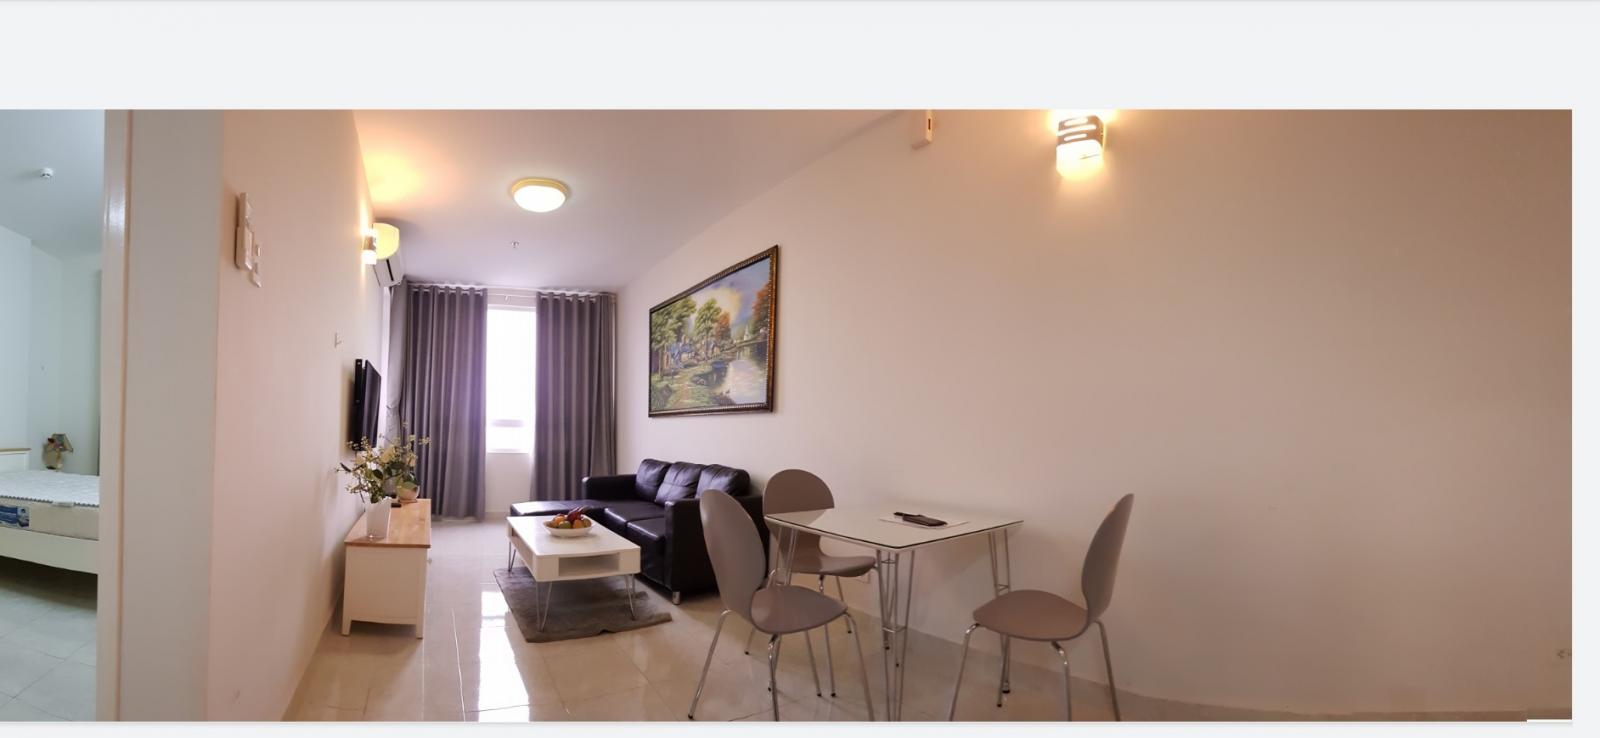 Cho thuê căn hộ chung cư tại Dự án Chung cư Thế Kỷ 21, Bình Thạnh, Tp.HCM diện tích 50m2